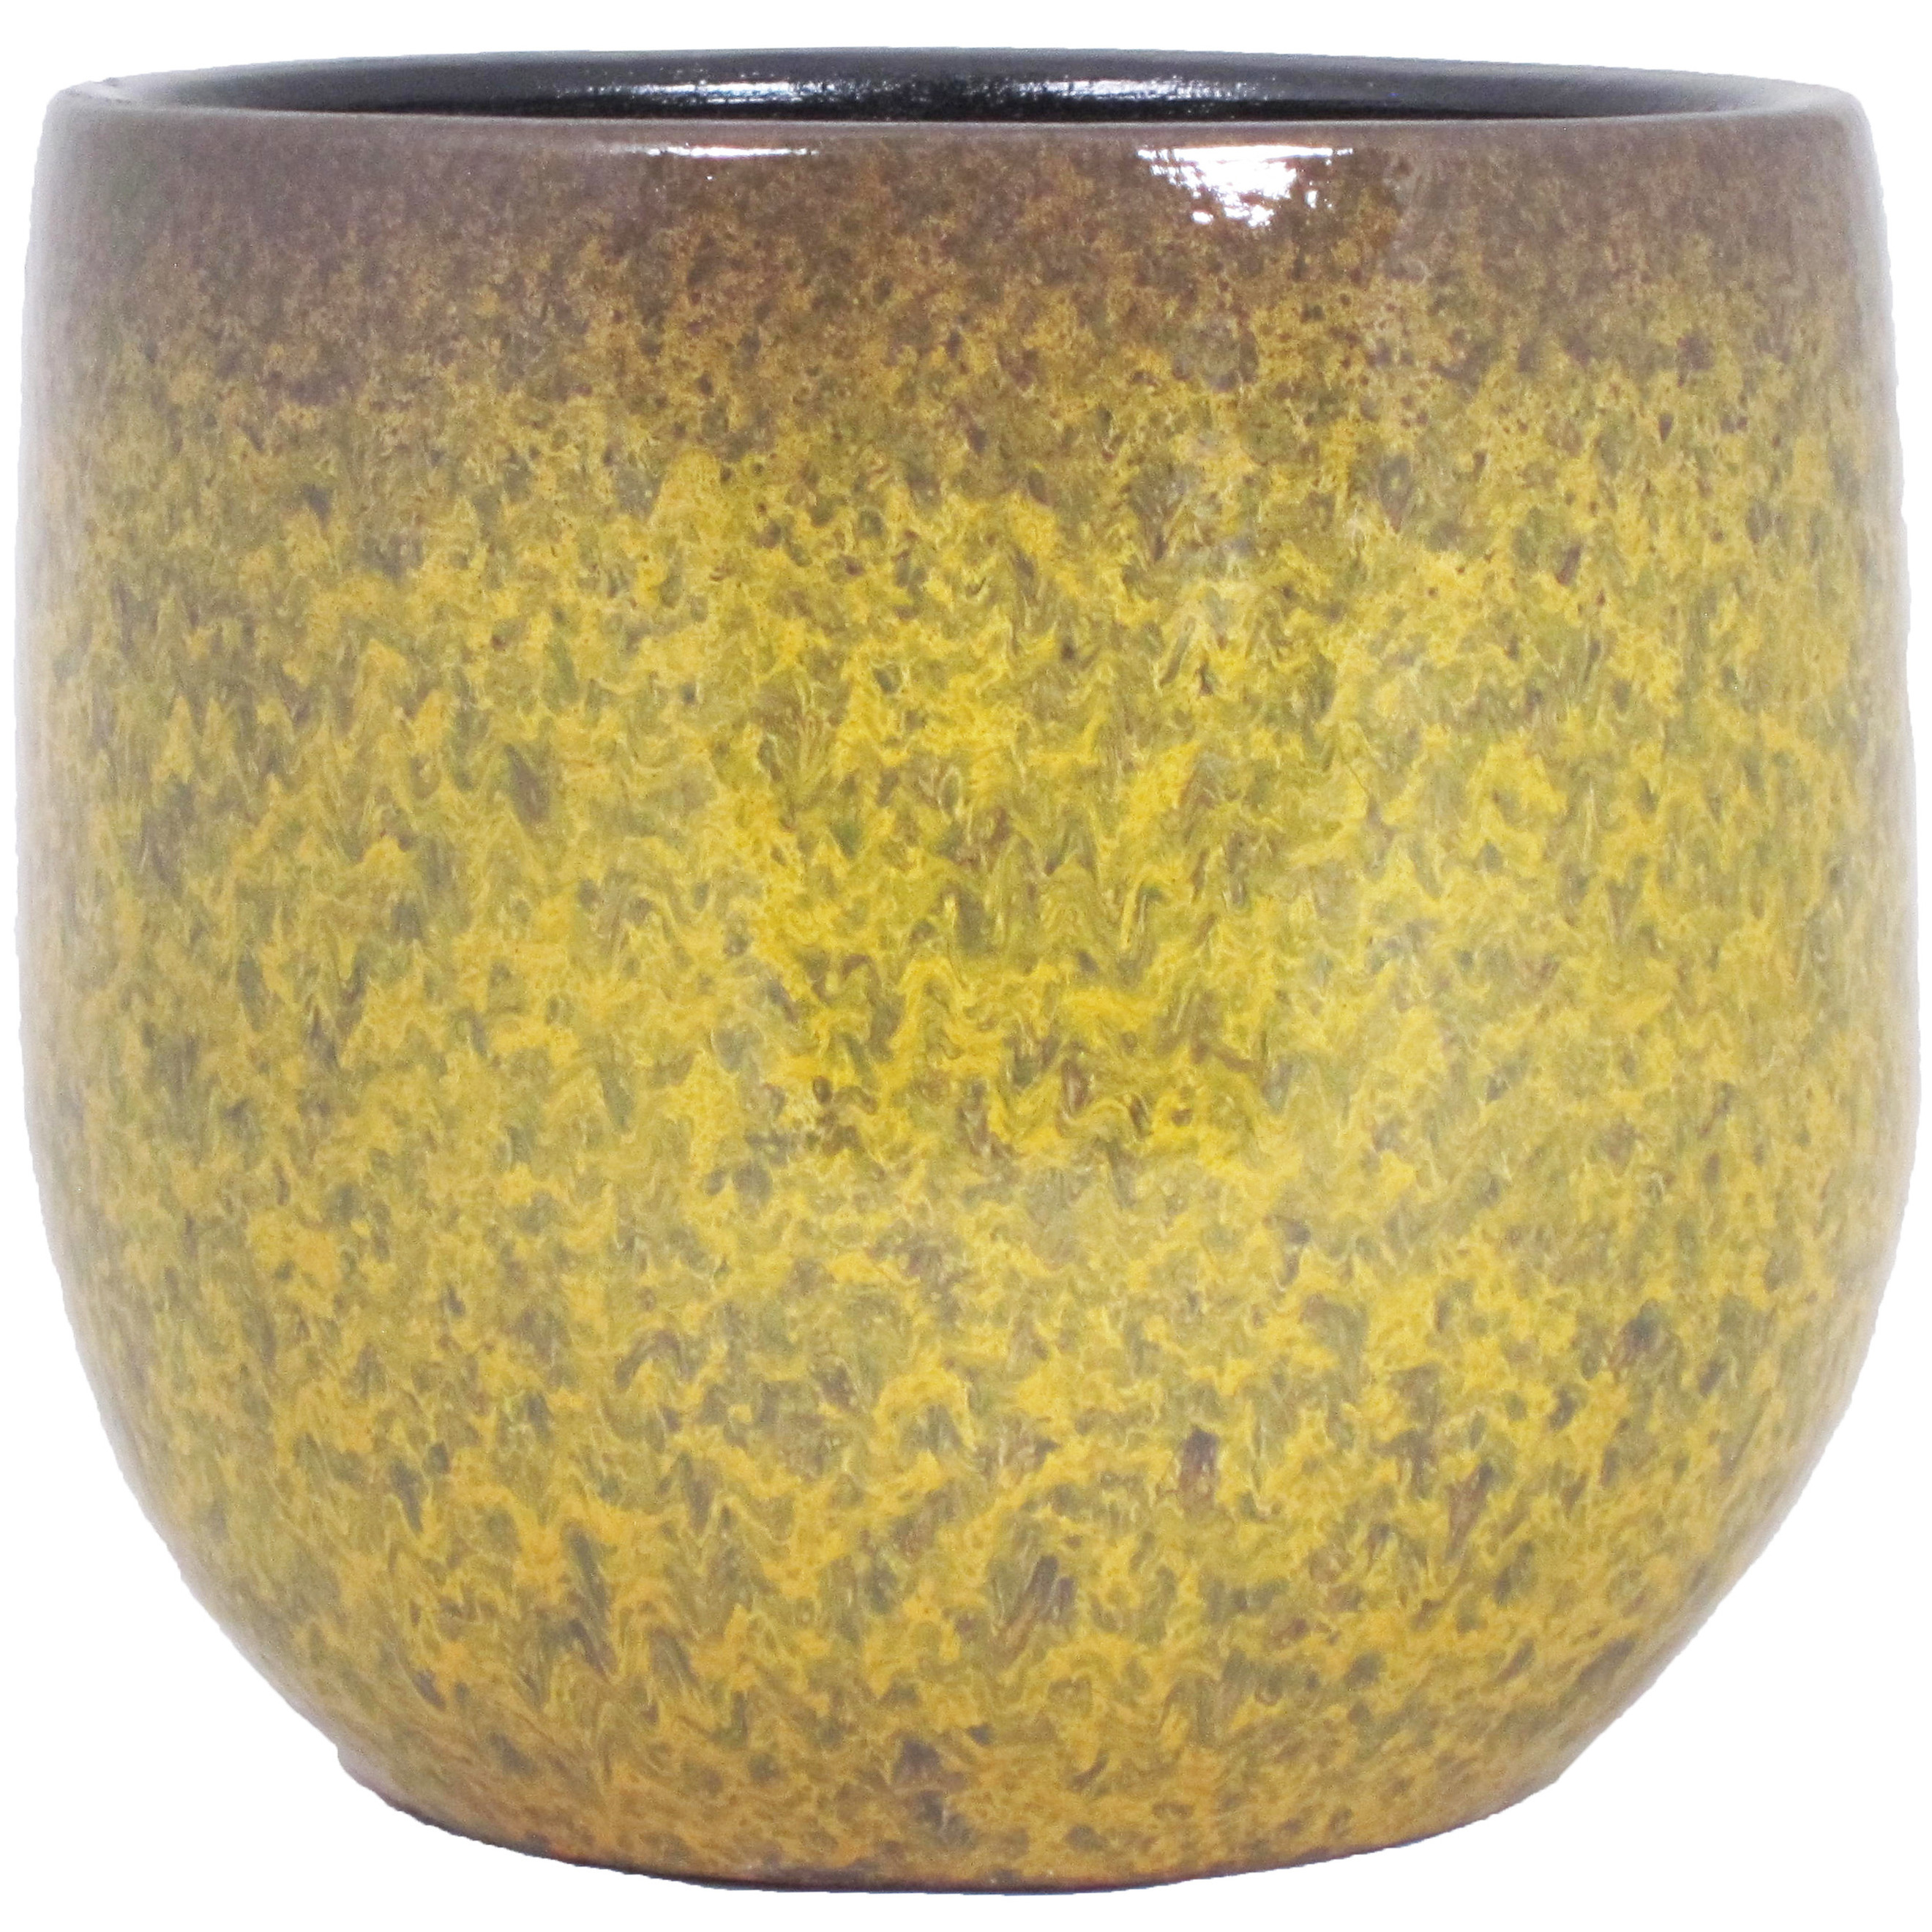 Floran Bloempot goud geel flakes keramiek voor kamerplant H17 x D19 cm -